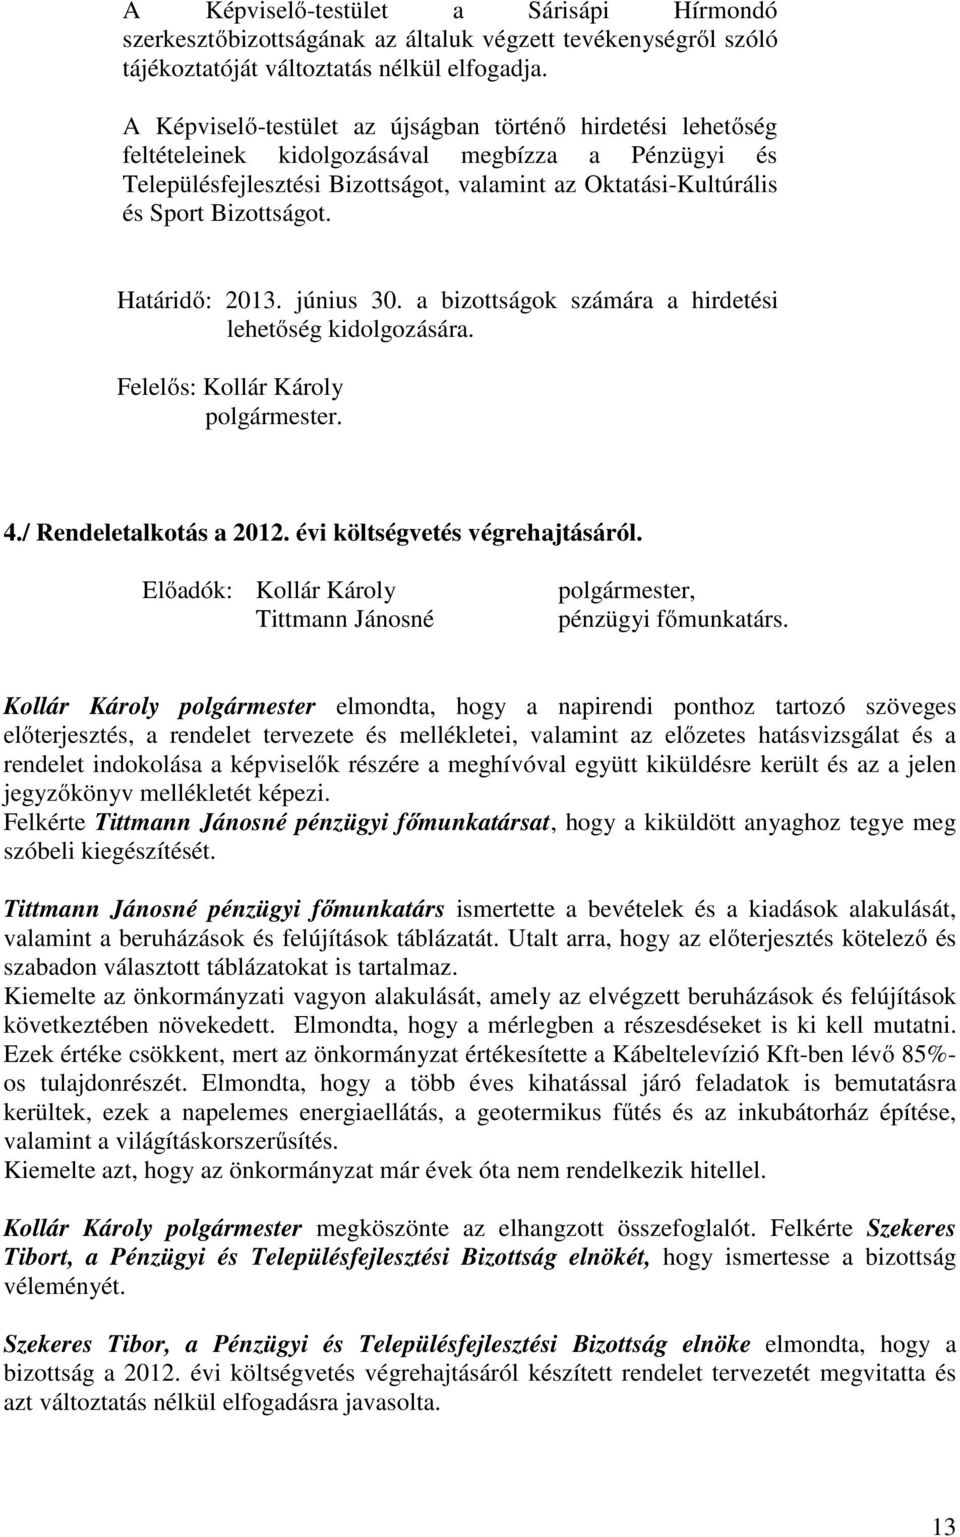 Határidő: 2013. június 30. a bizottságok számára a hirdetési lehetőség kidolgozására. Felelős: Kollár Károly polgármester. 4./ Rendeletalkotás a 2012. évi költségvetés végrehajtásáról.